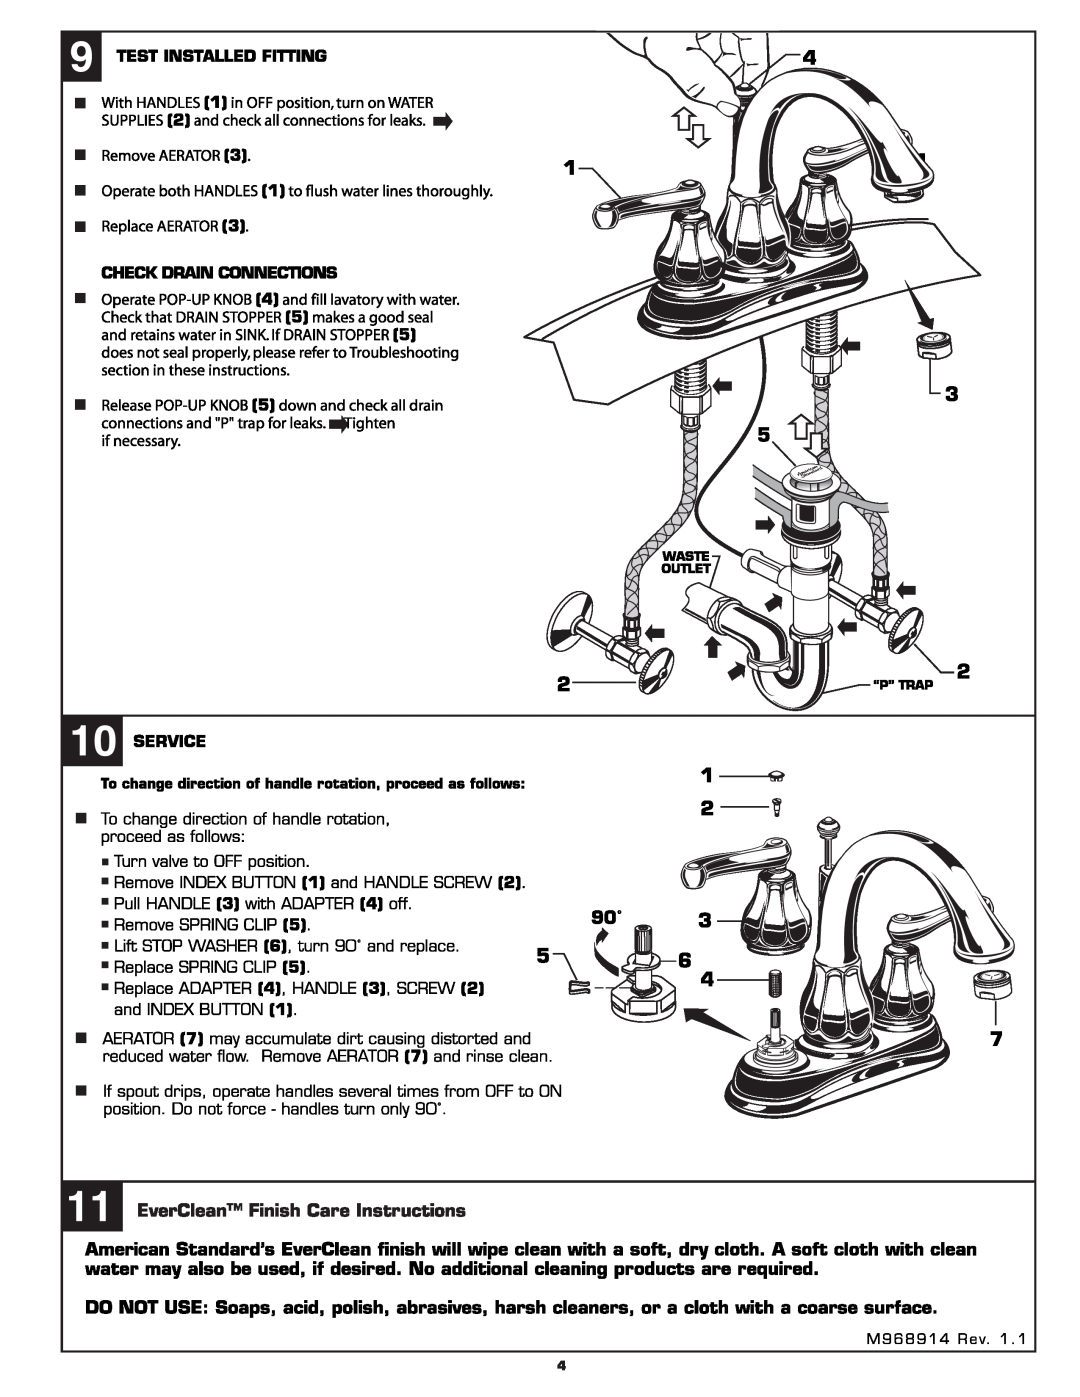 American Standard 6024EZ manual 